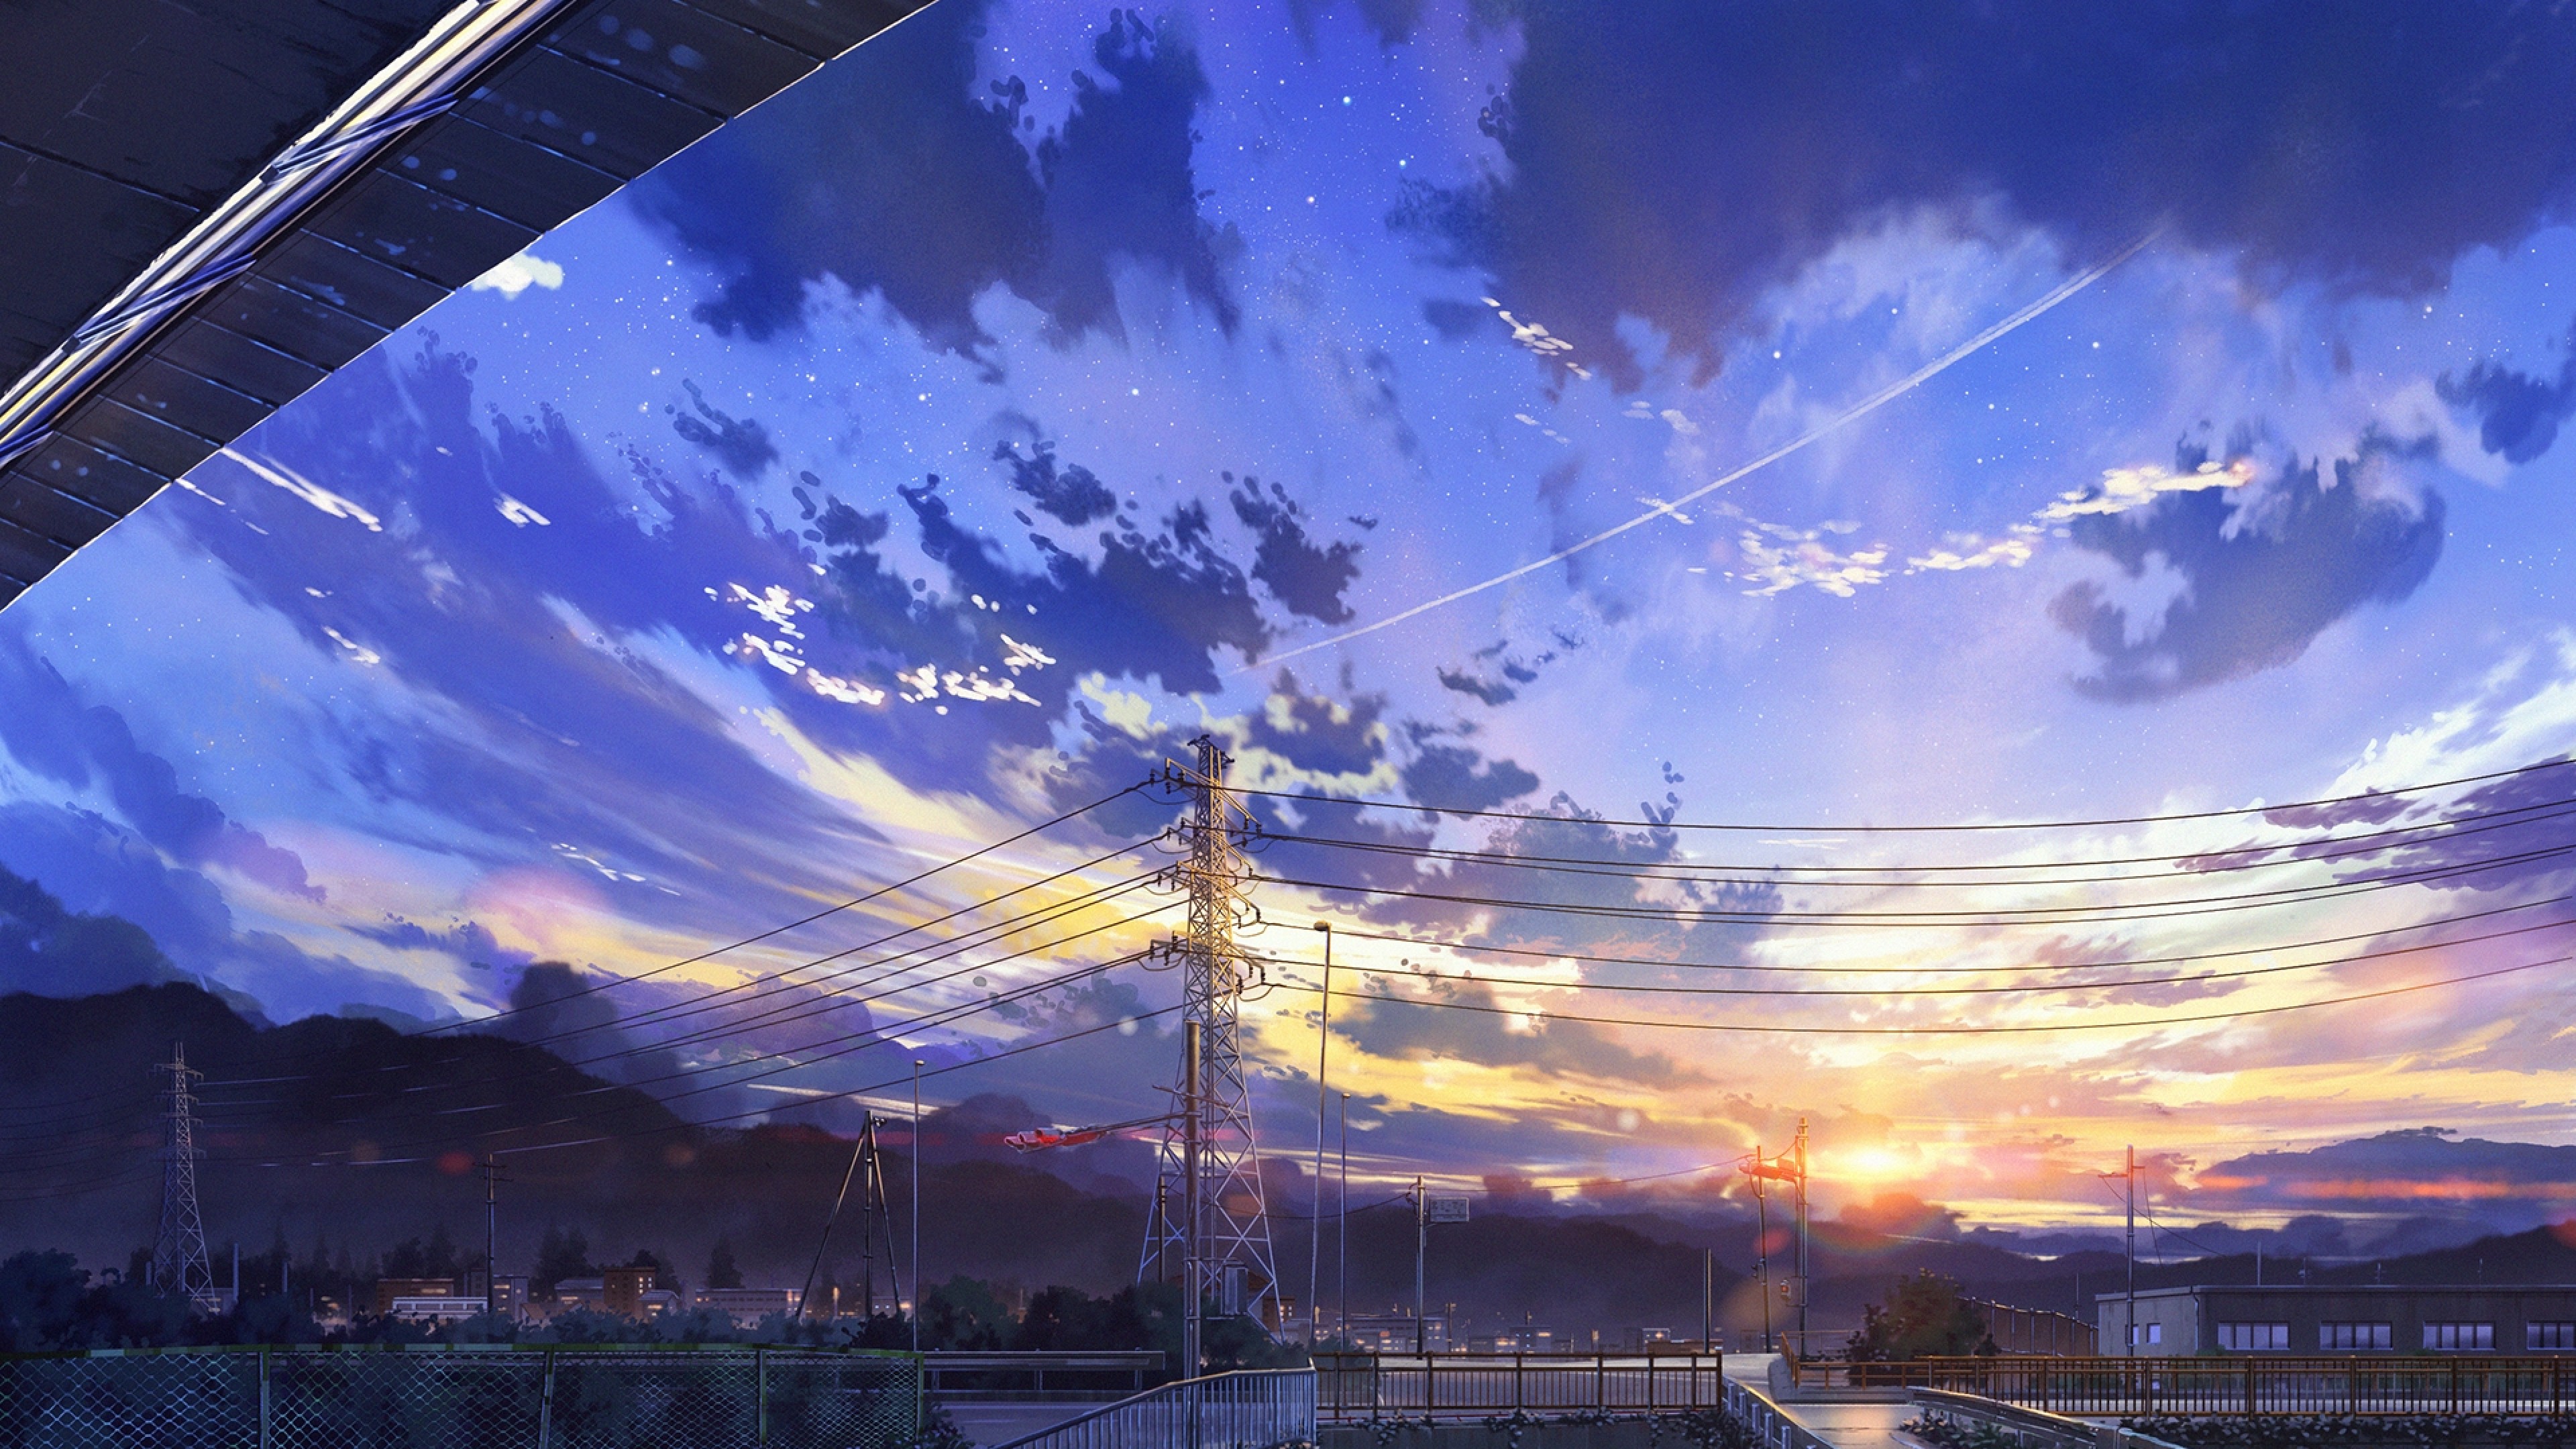 Anime Landscape Images - Free Download on Freepik